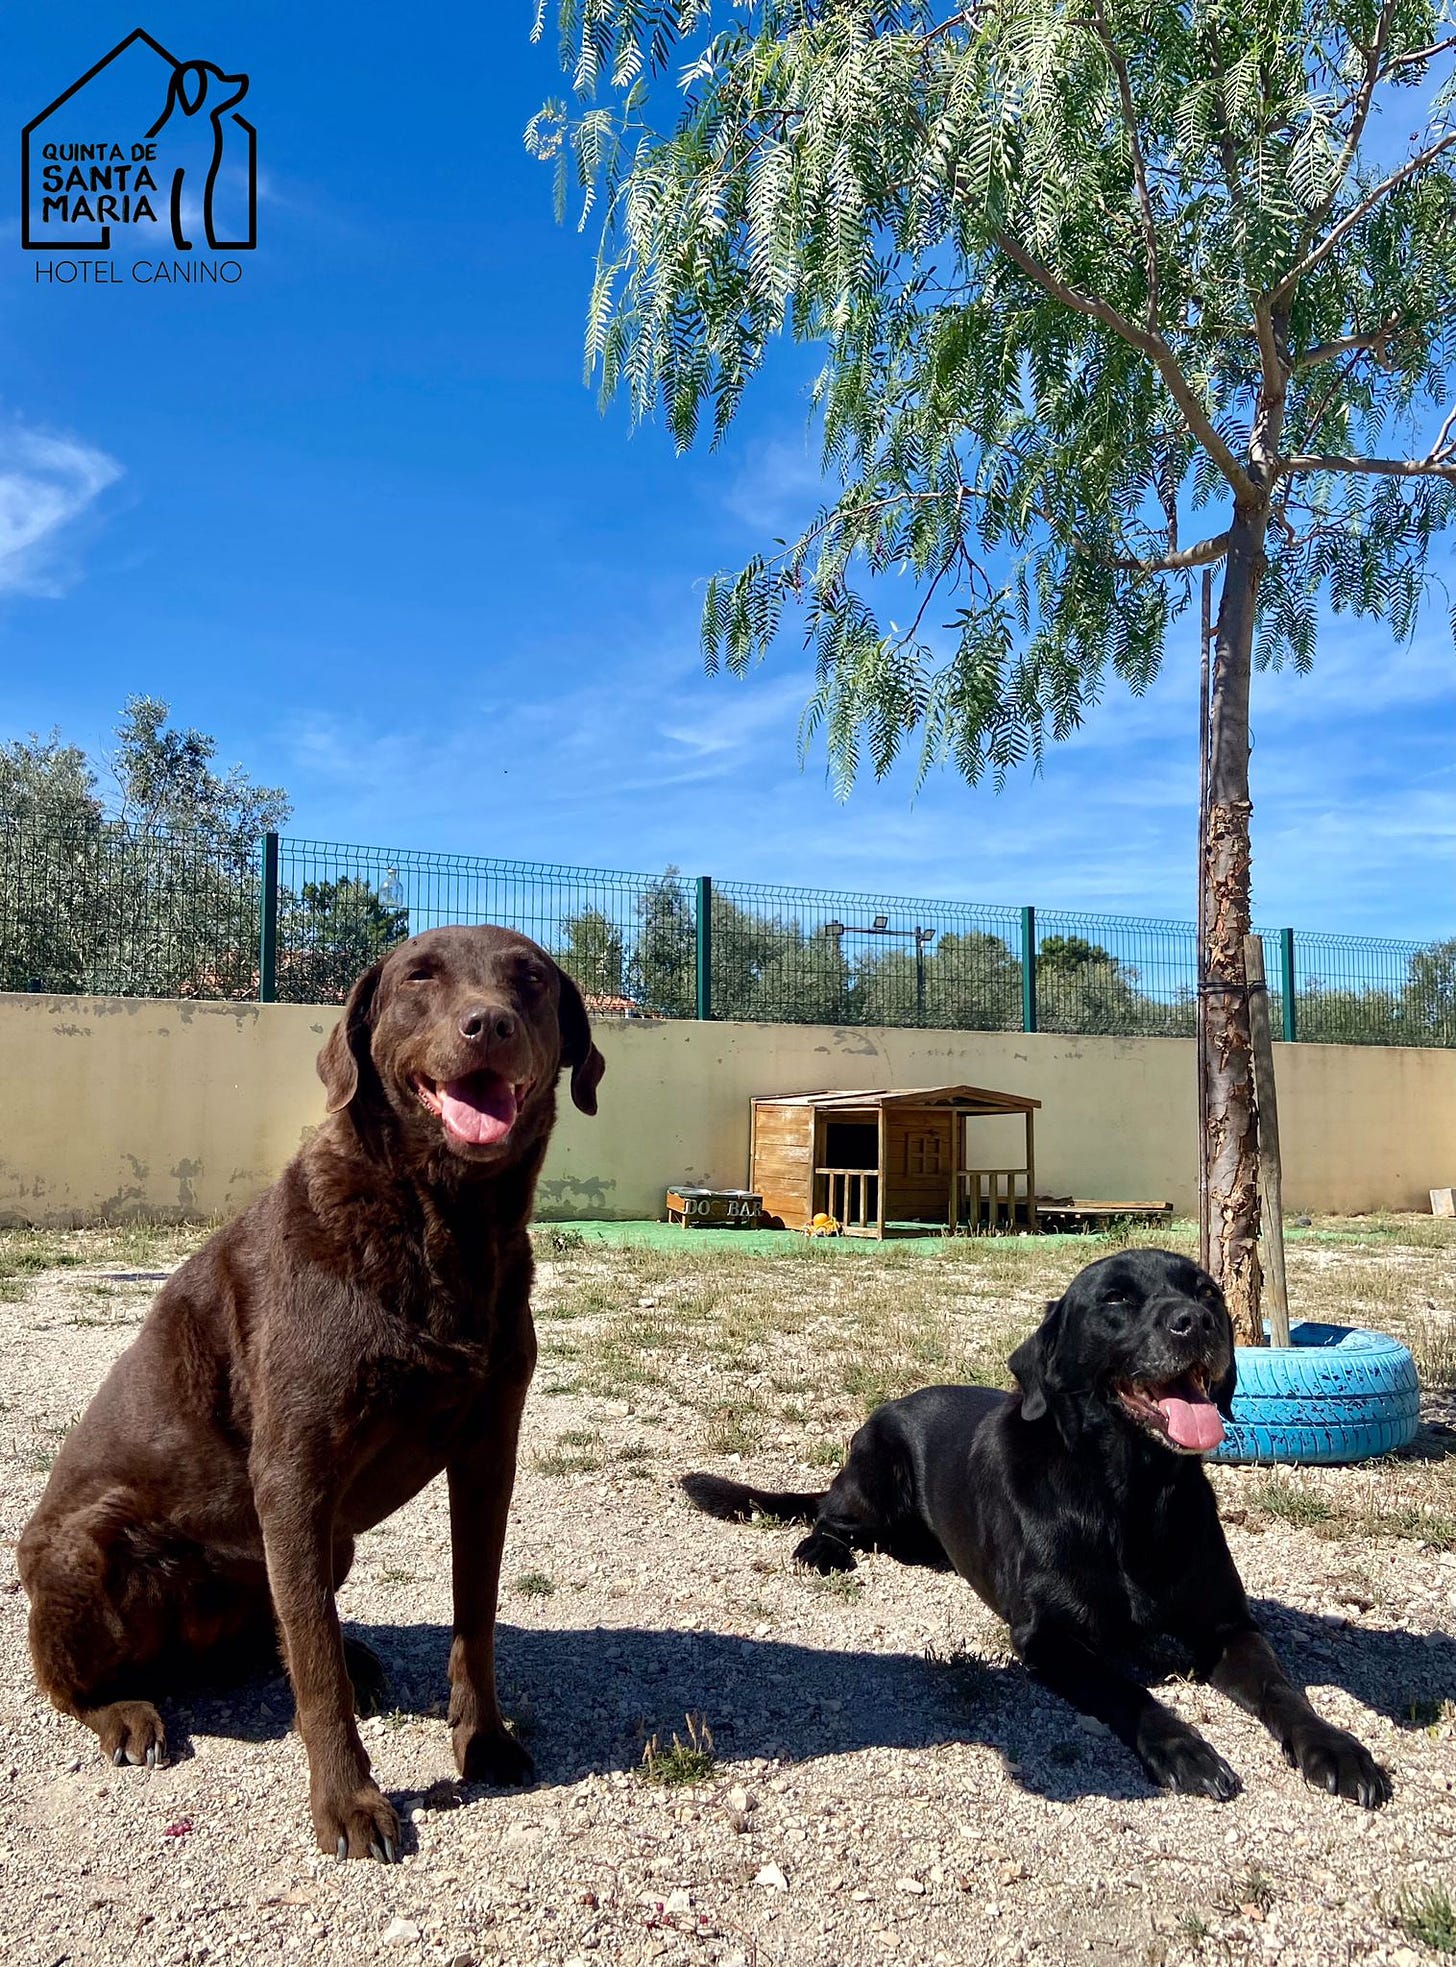 Bobby & Hummock enjoying their stay at Quinta de Santa Maria